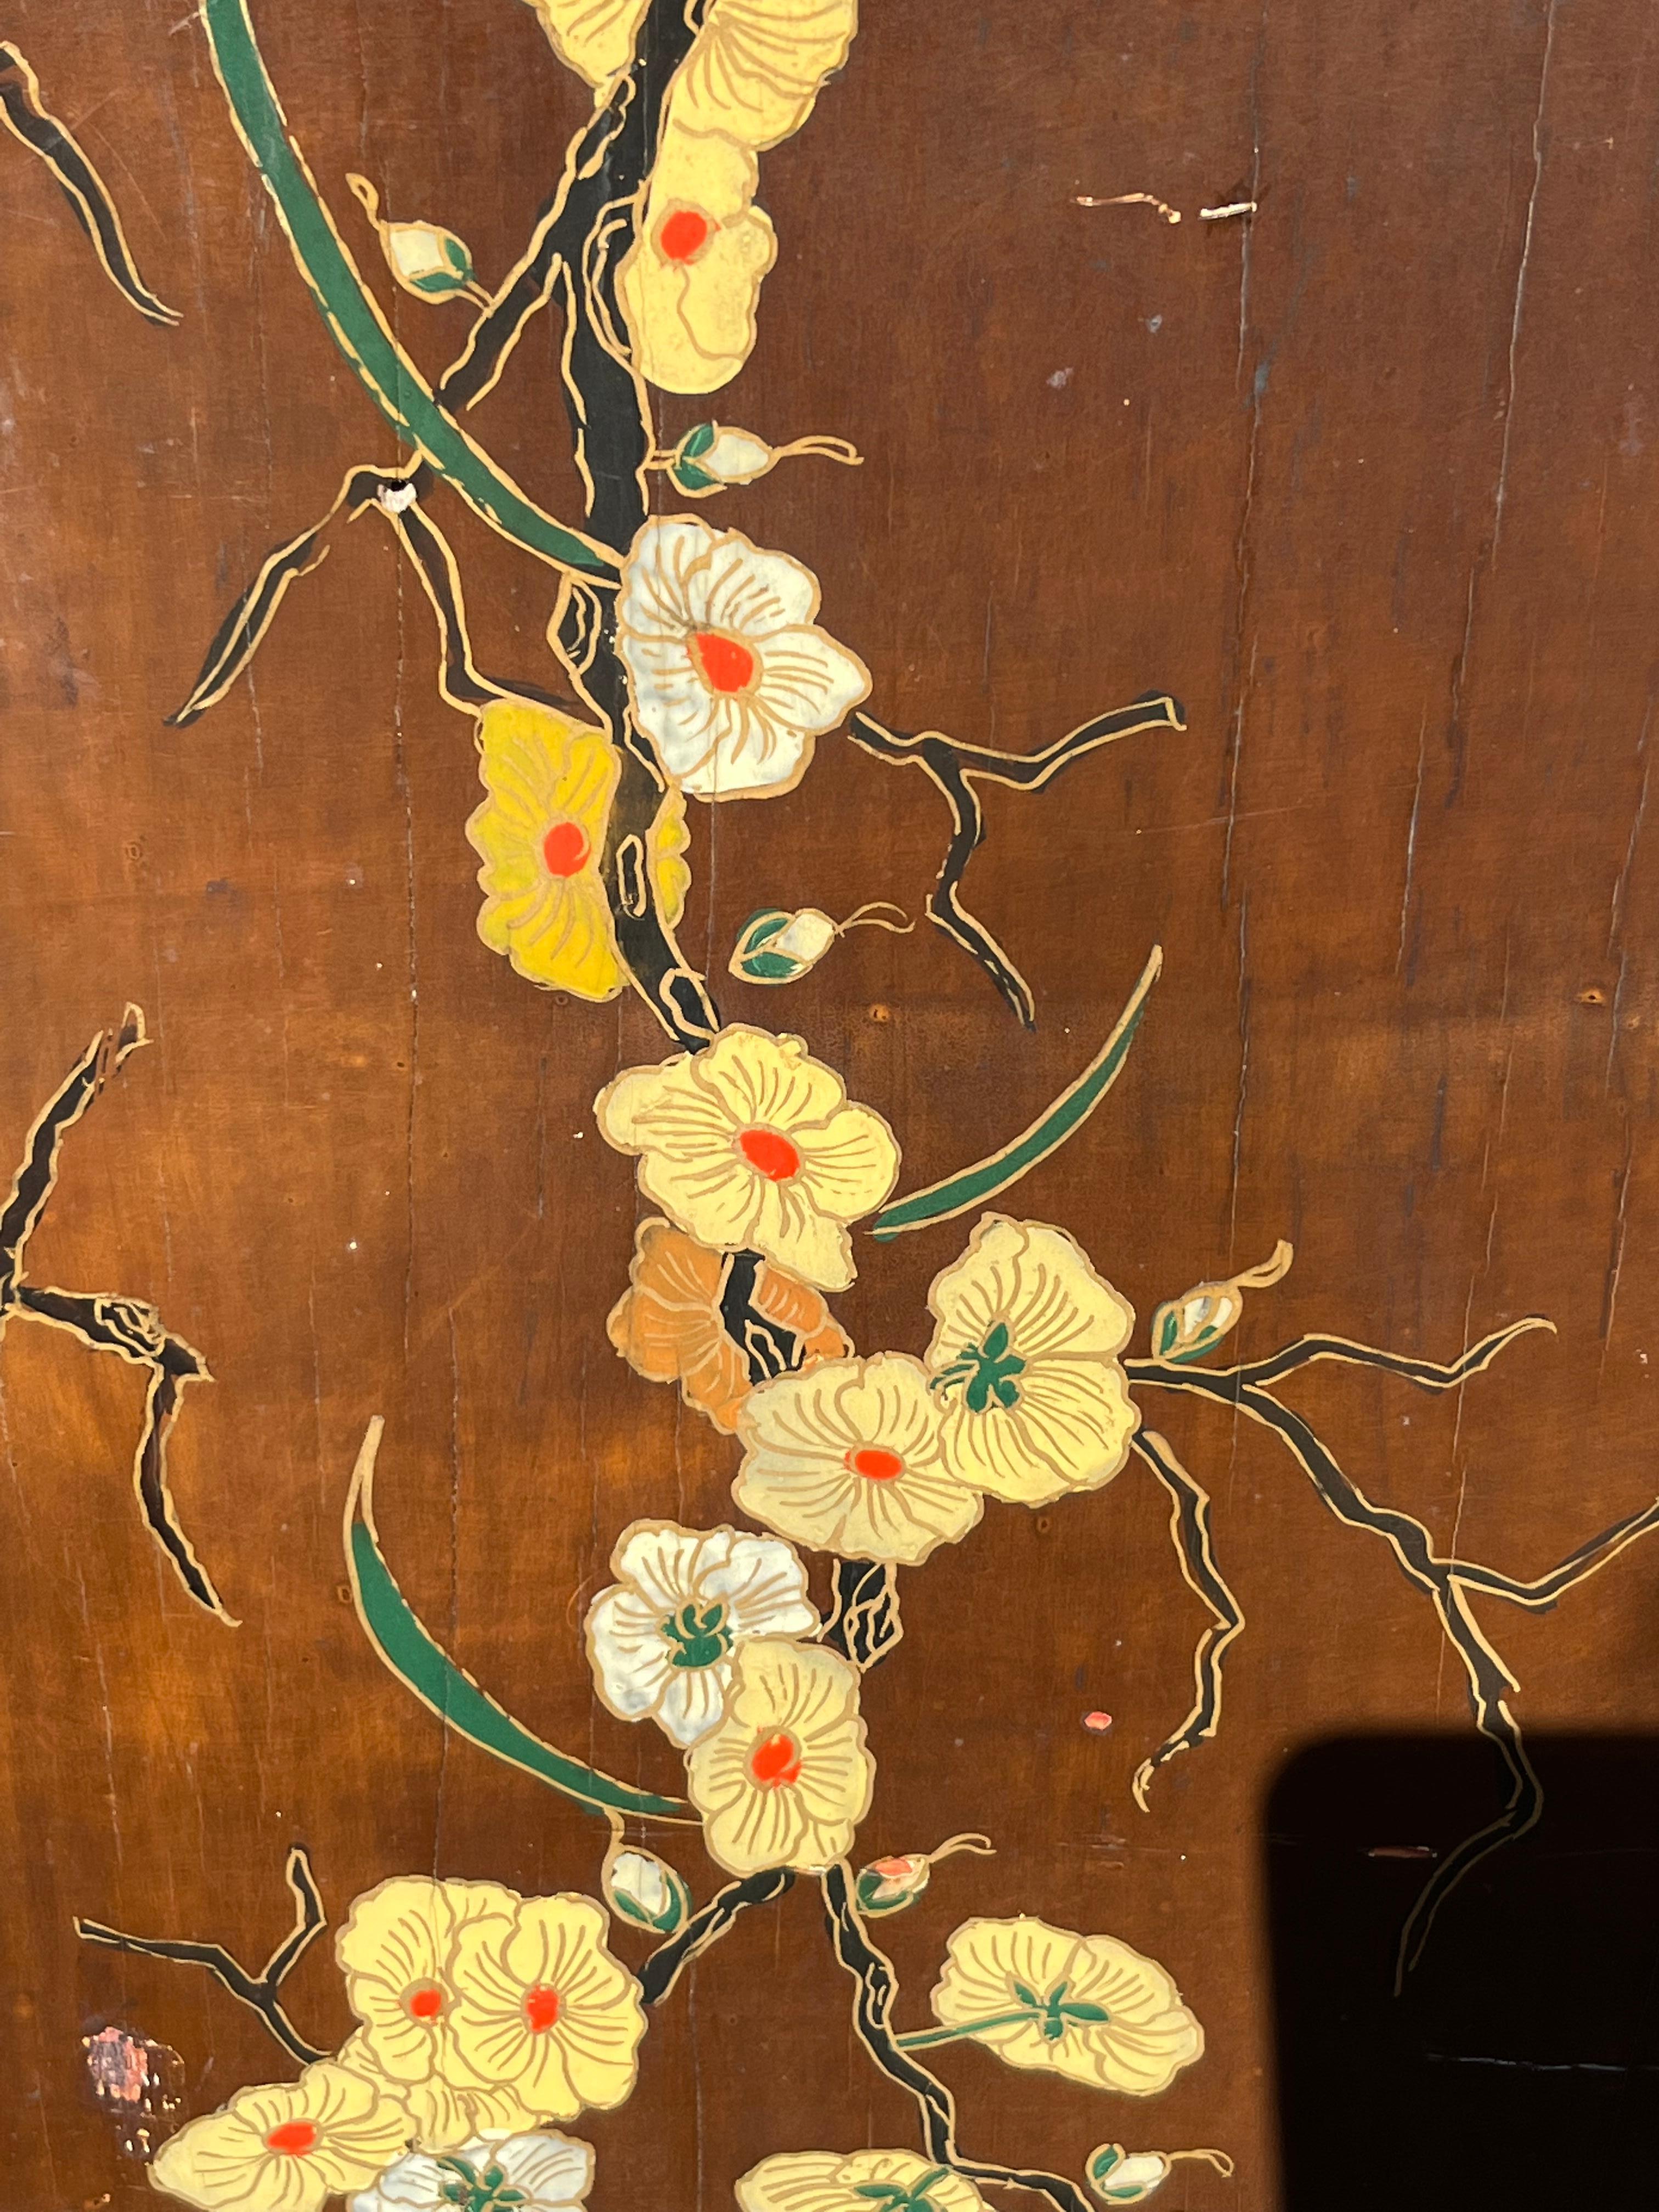 Deux panneaux de laque sur bois d'inspiration japonaise, couleurs douces, thème floral.
Style Art Nouveau// Art Déco.
Origine française.
Peut s'intégrer parfaitement au-dessus d'une paire de consoles Art déco ou Art nouveau.

